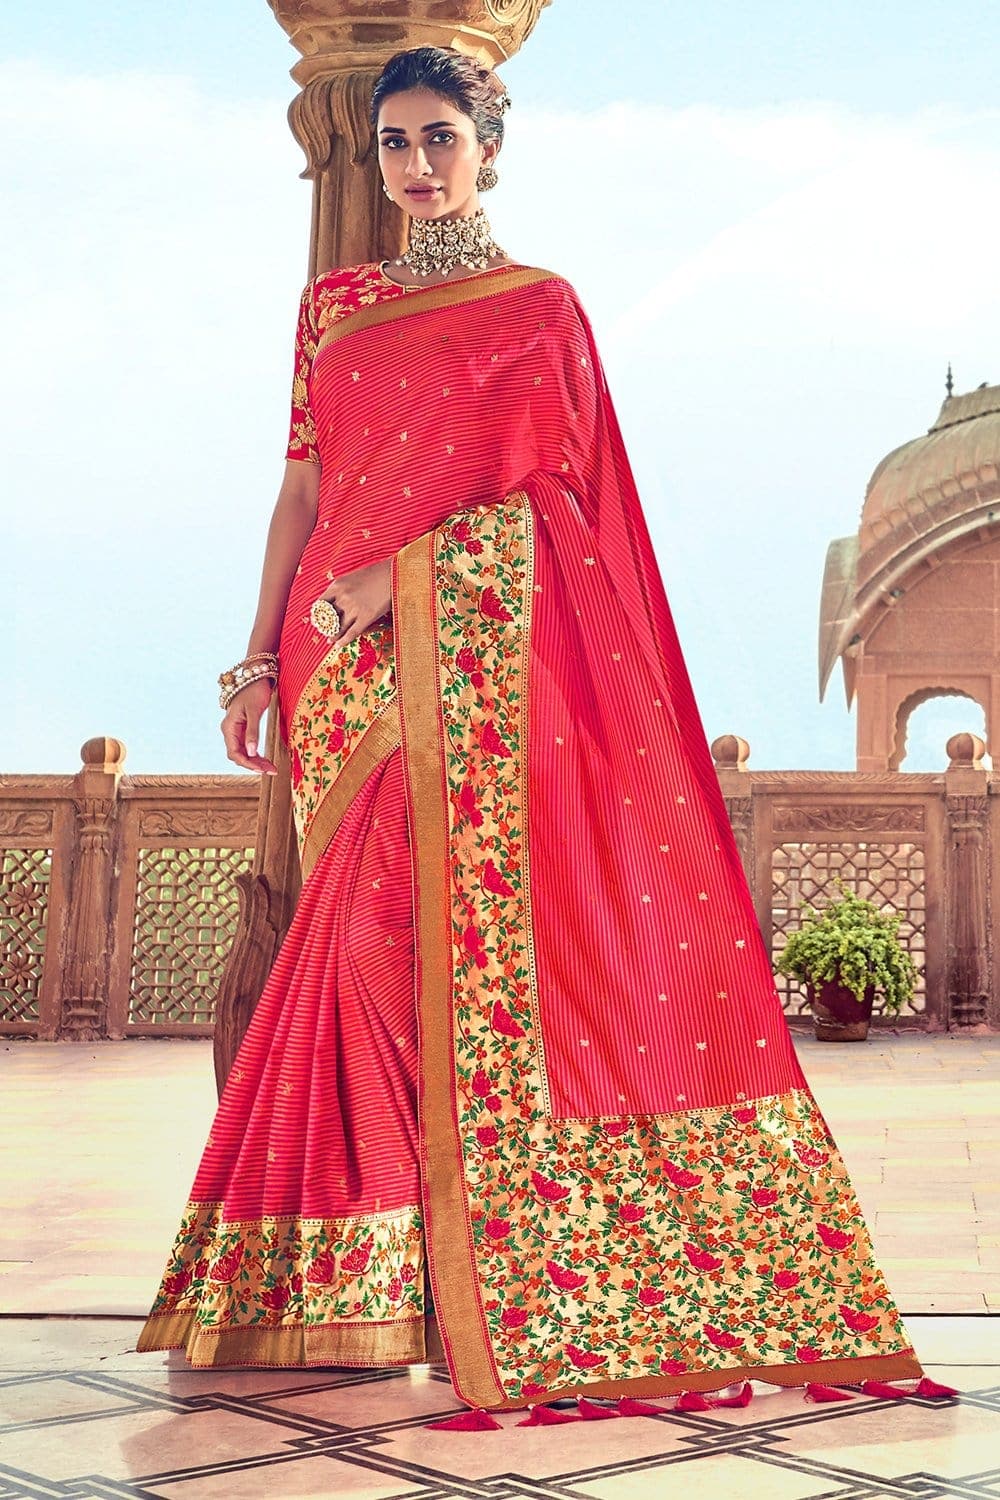 Banarasi Saree Desire Red Banarasi Saree saree online